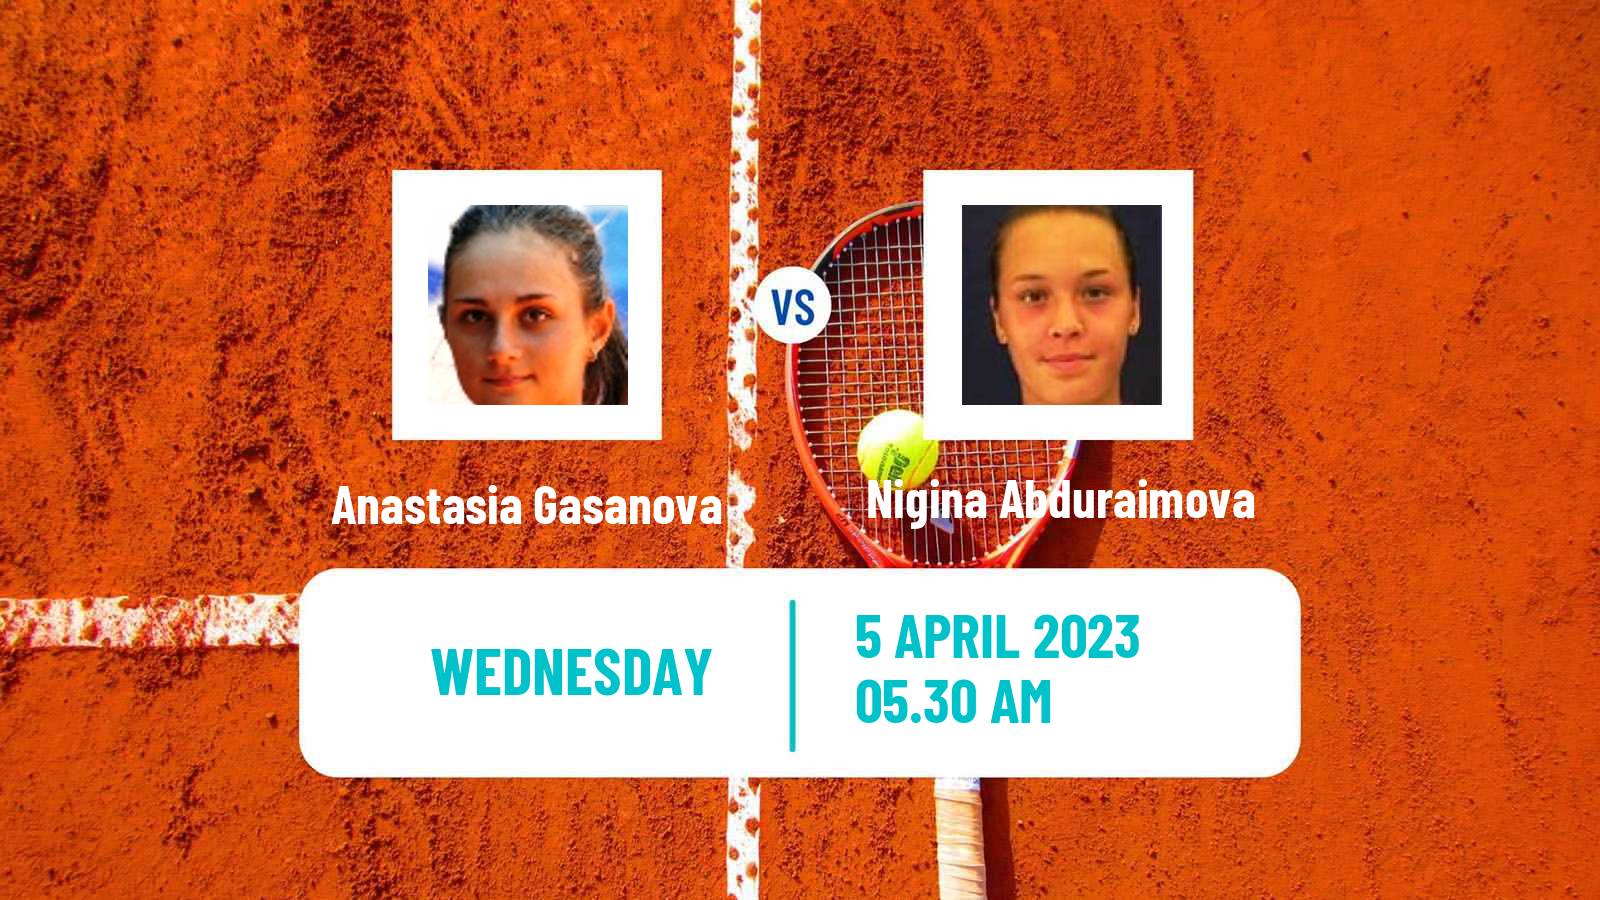 Tennis ITF Tournaments Anastasia Gasanova - Nigina Abduraimova